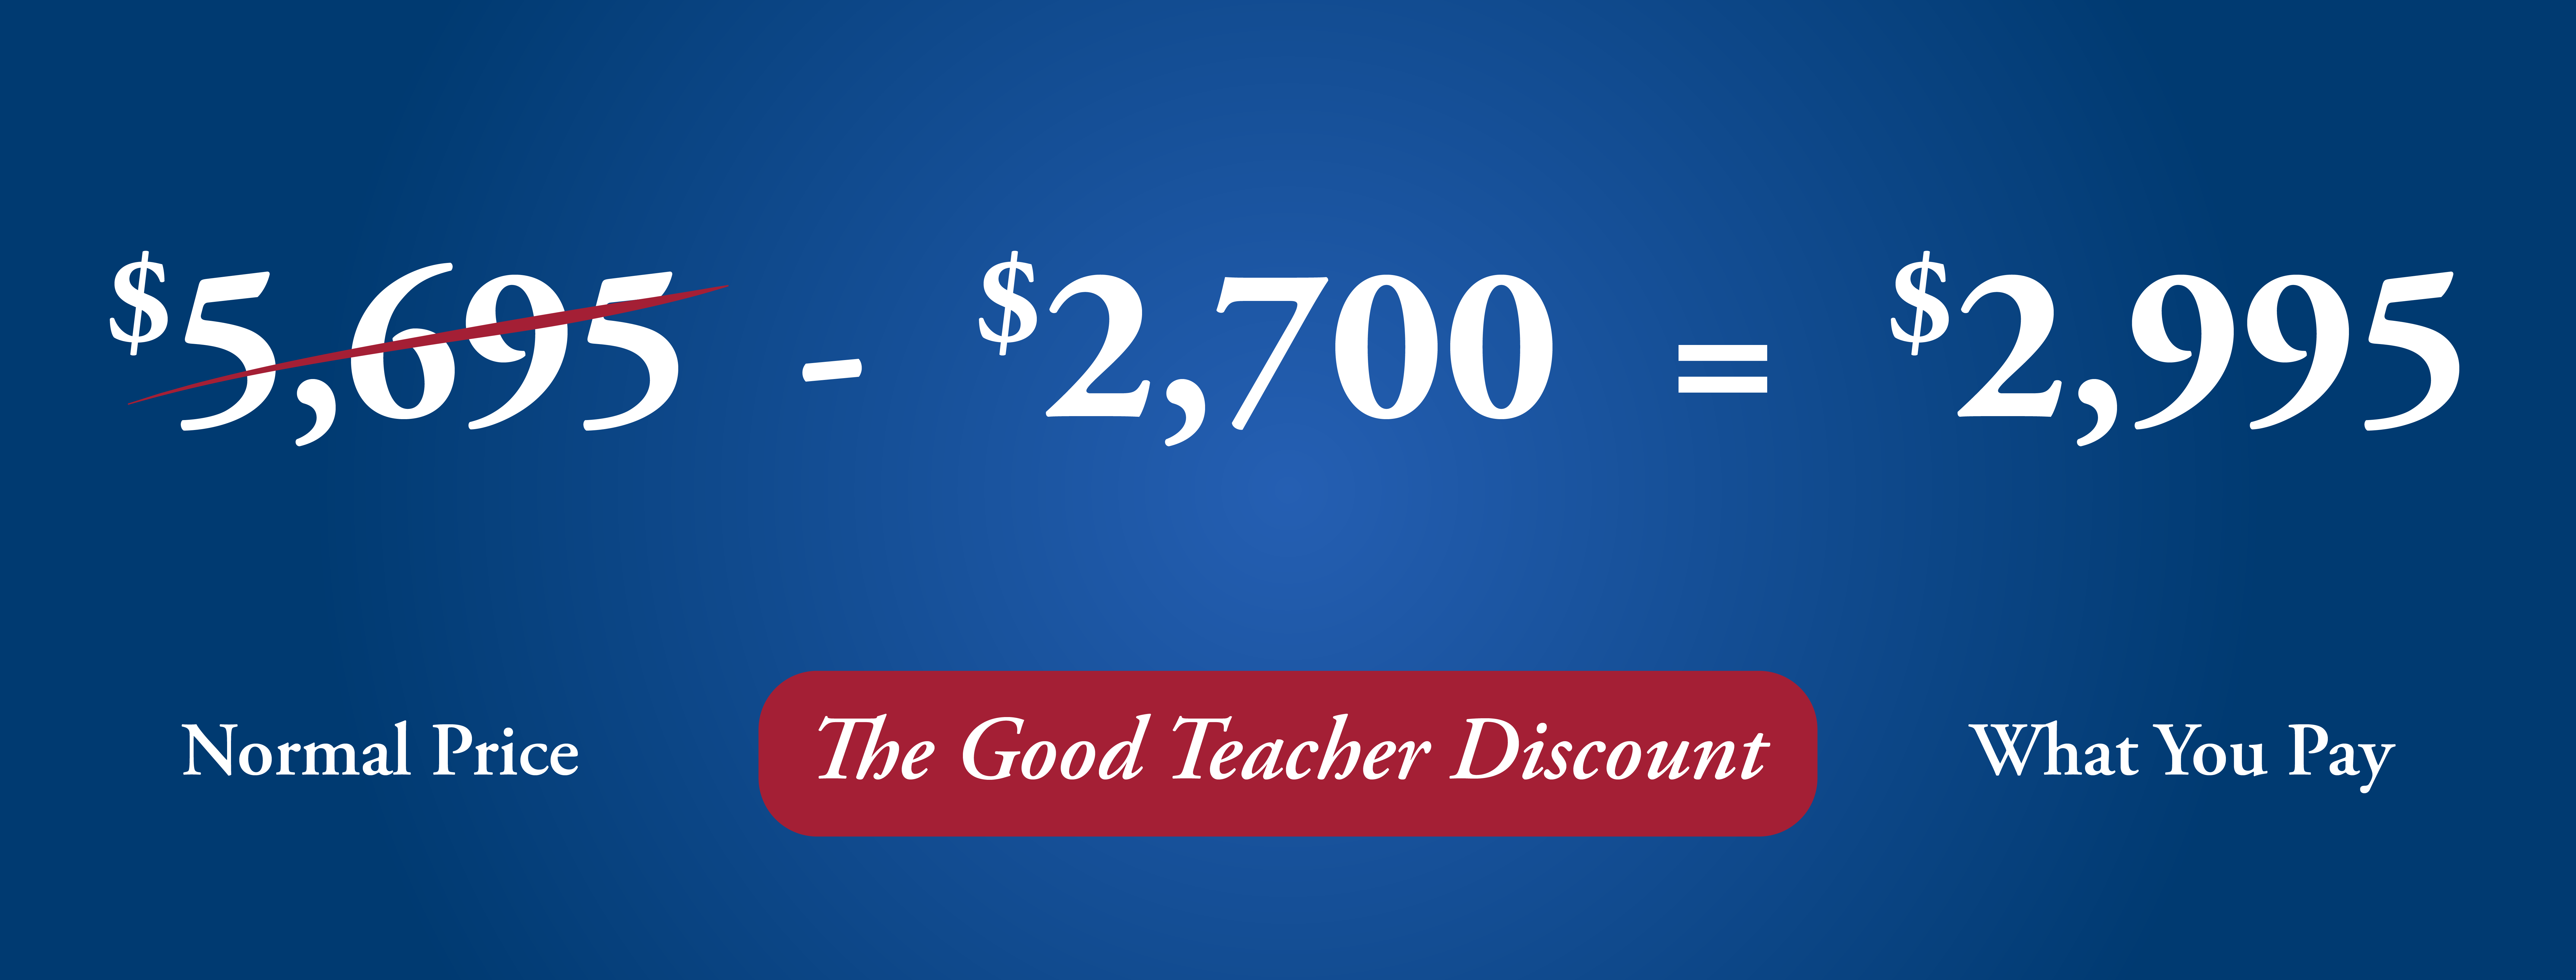 $2.700 Good Teacher Discount